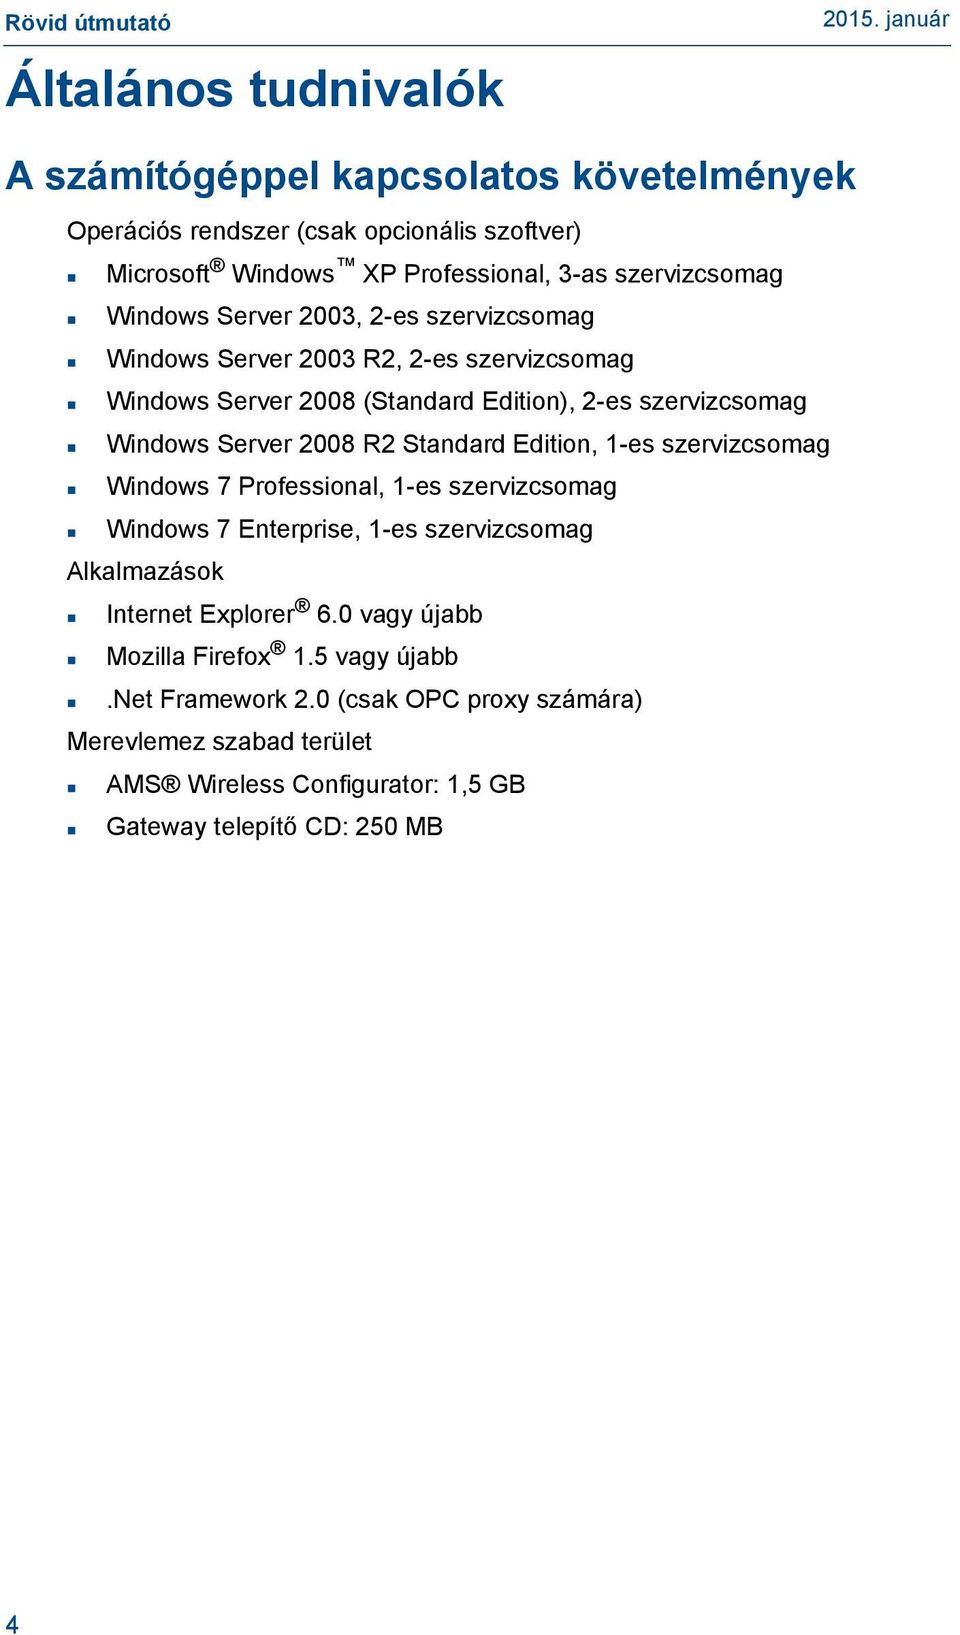 Standard Edition, 1-es szervizcsomag Windows 7 Professional, 1-es szervizcsomag Windows 7 Enterprise, 1-es szervizcsomag Alkalmazások Internet Explorer 6.